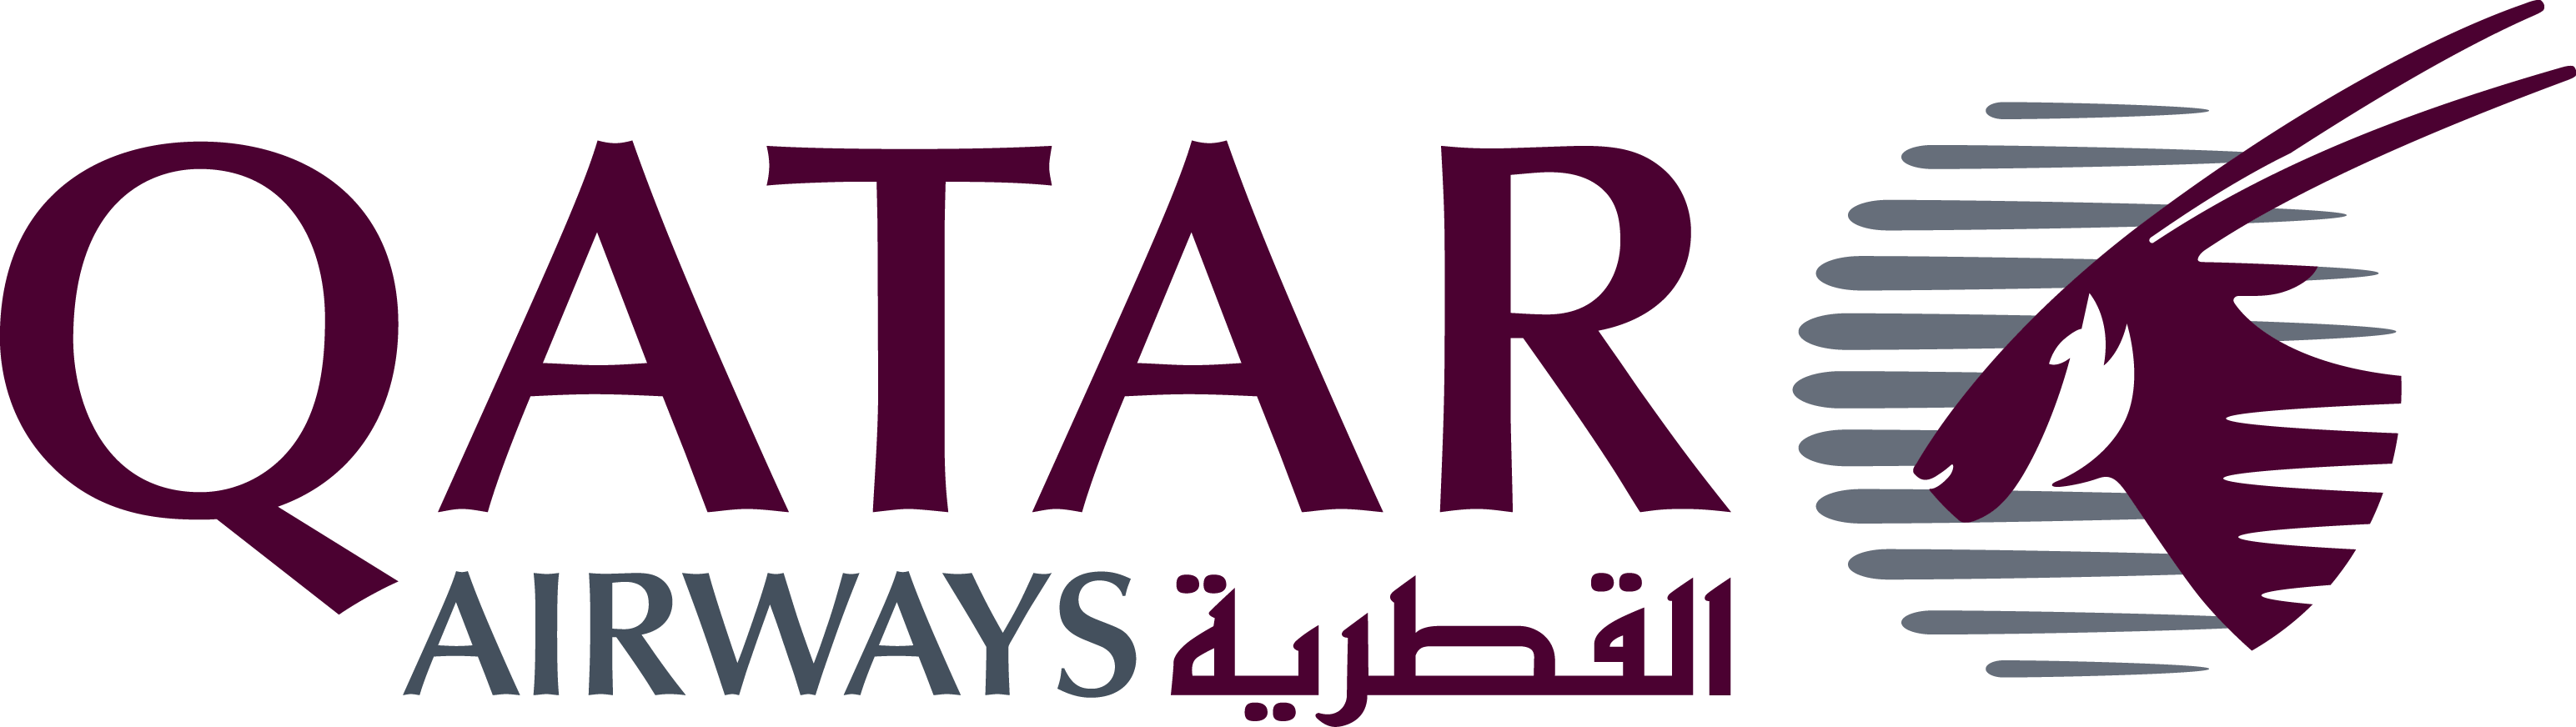 qatar_air_line_logo.png